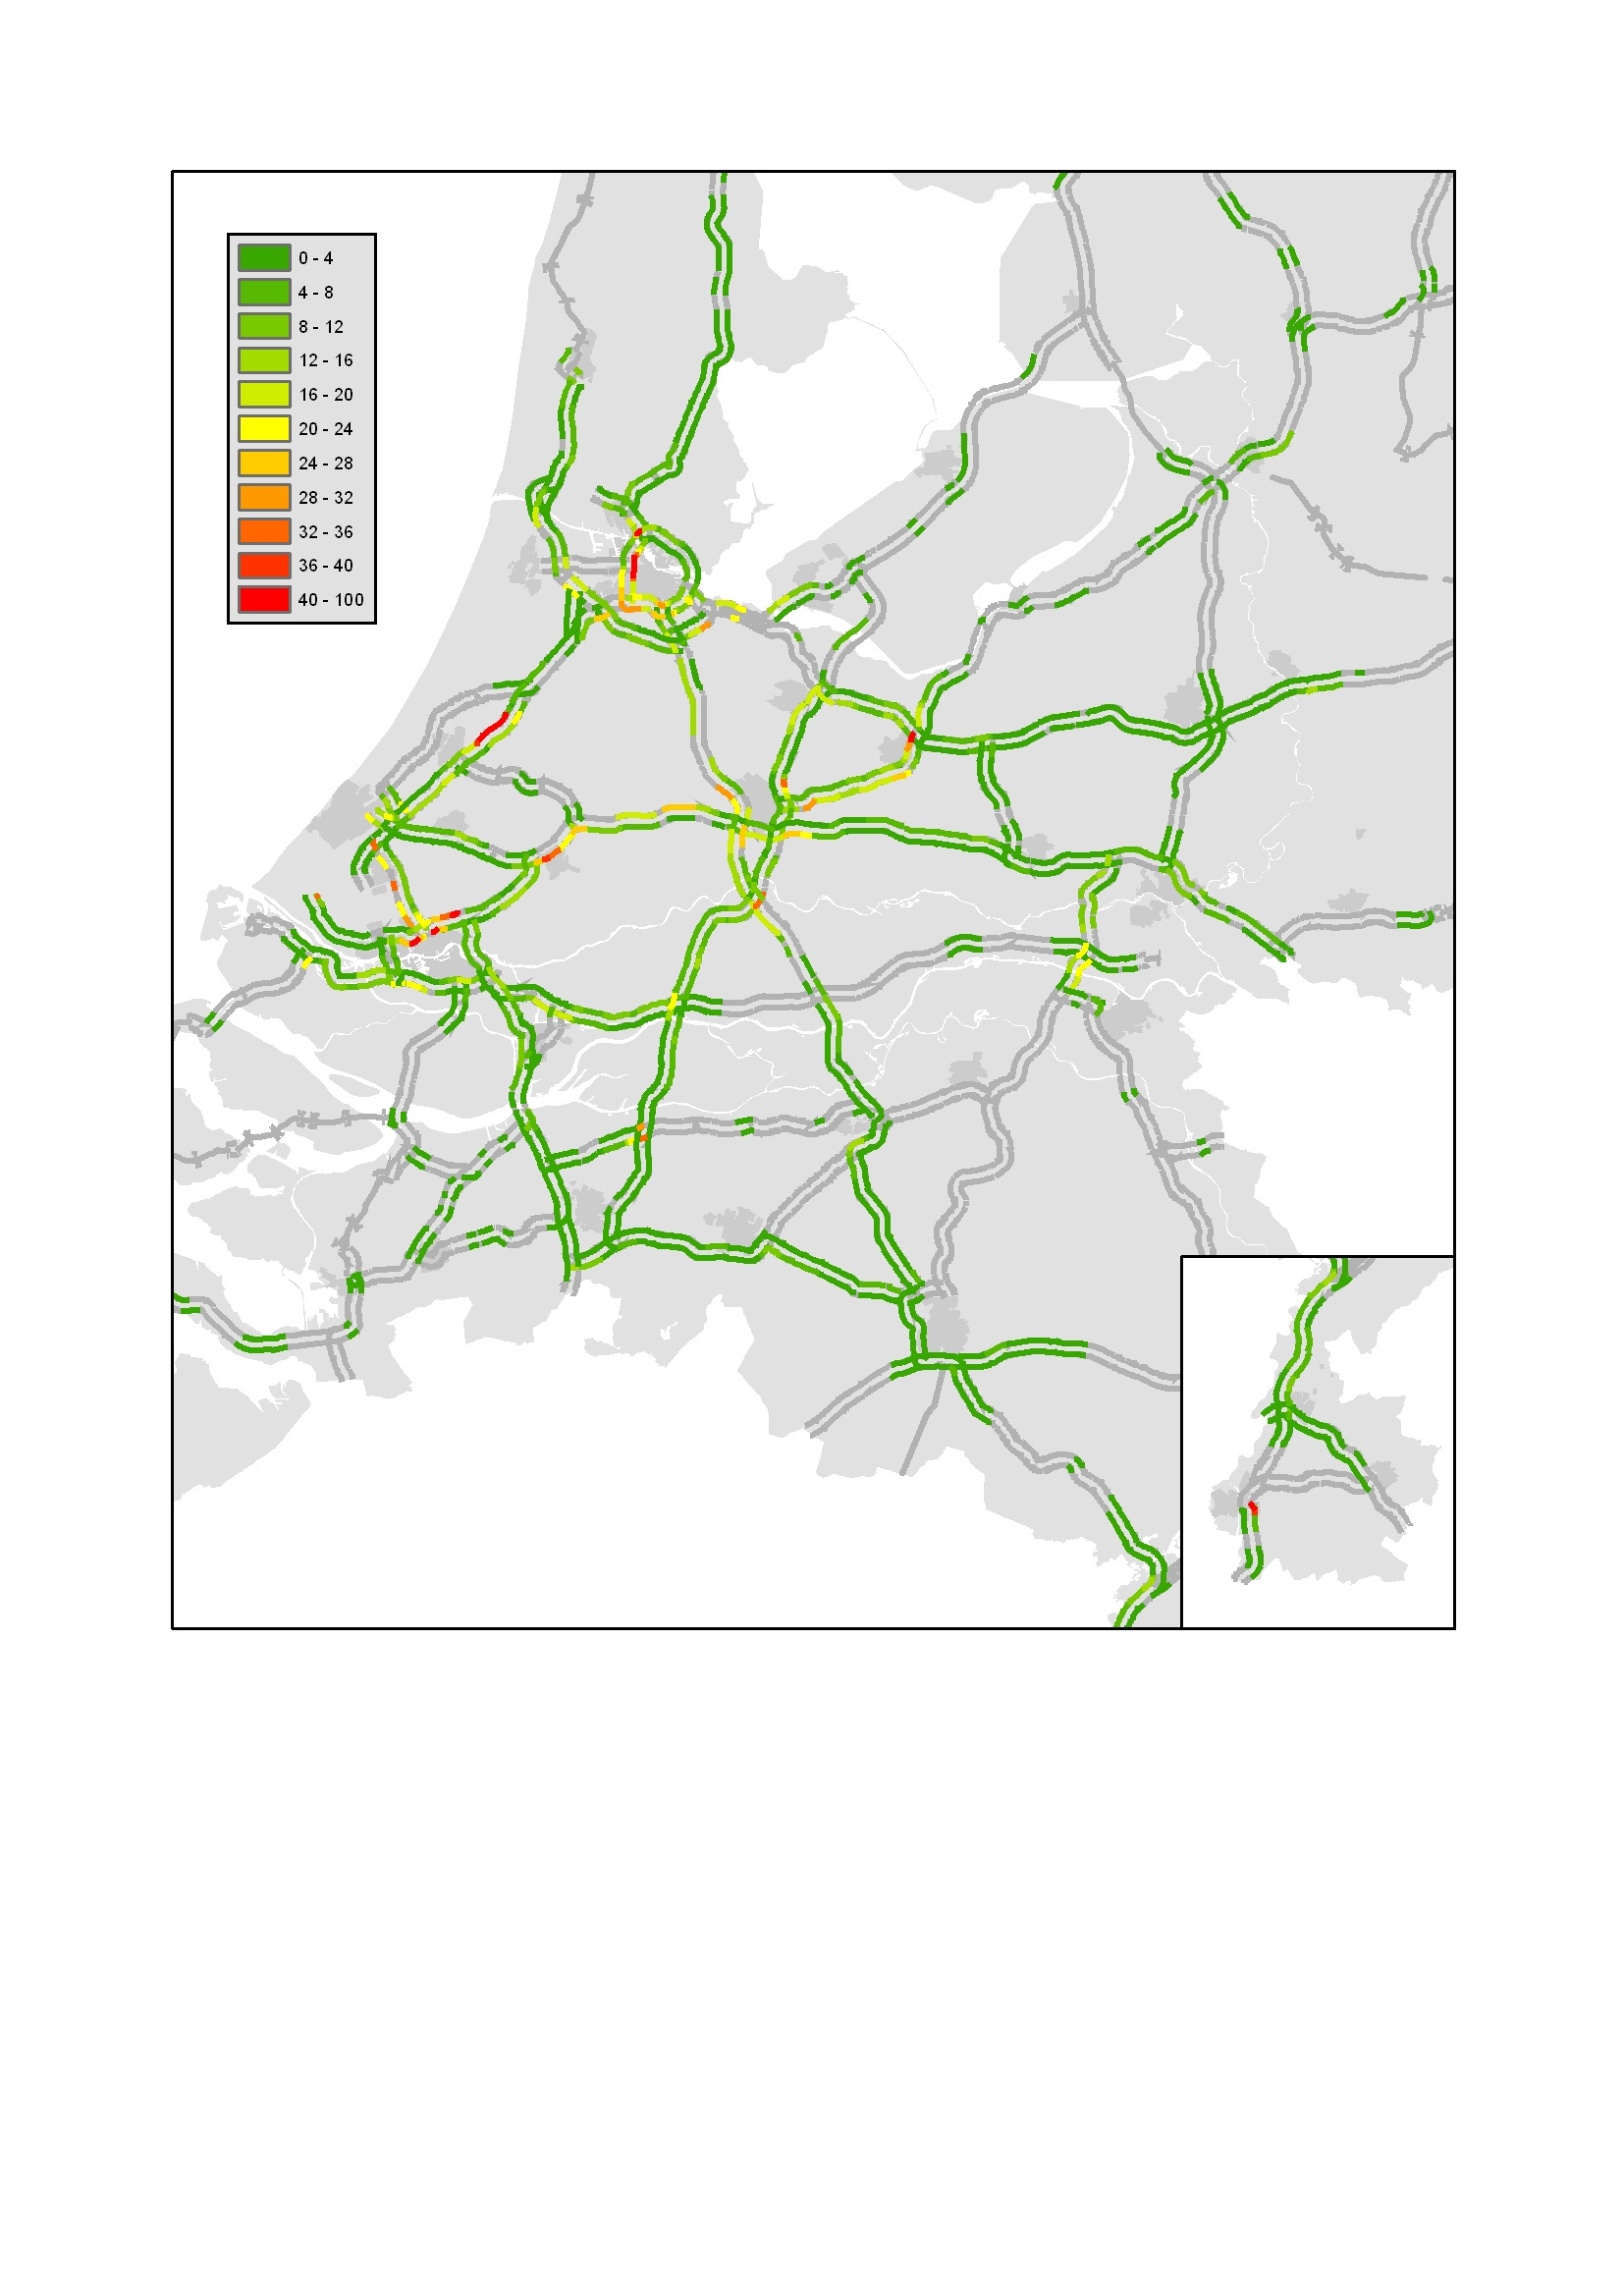 2.3 Overzichtskaart van locaties met de bijdrage aan het jaarreistijdverlies Donkerrood gekleurde locaties leveren de grootste bijdrage aan het jaarreistijdverlies uitgedrukt in voertuigverliesuren.